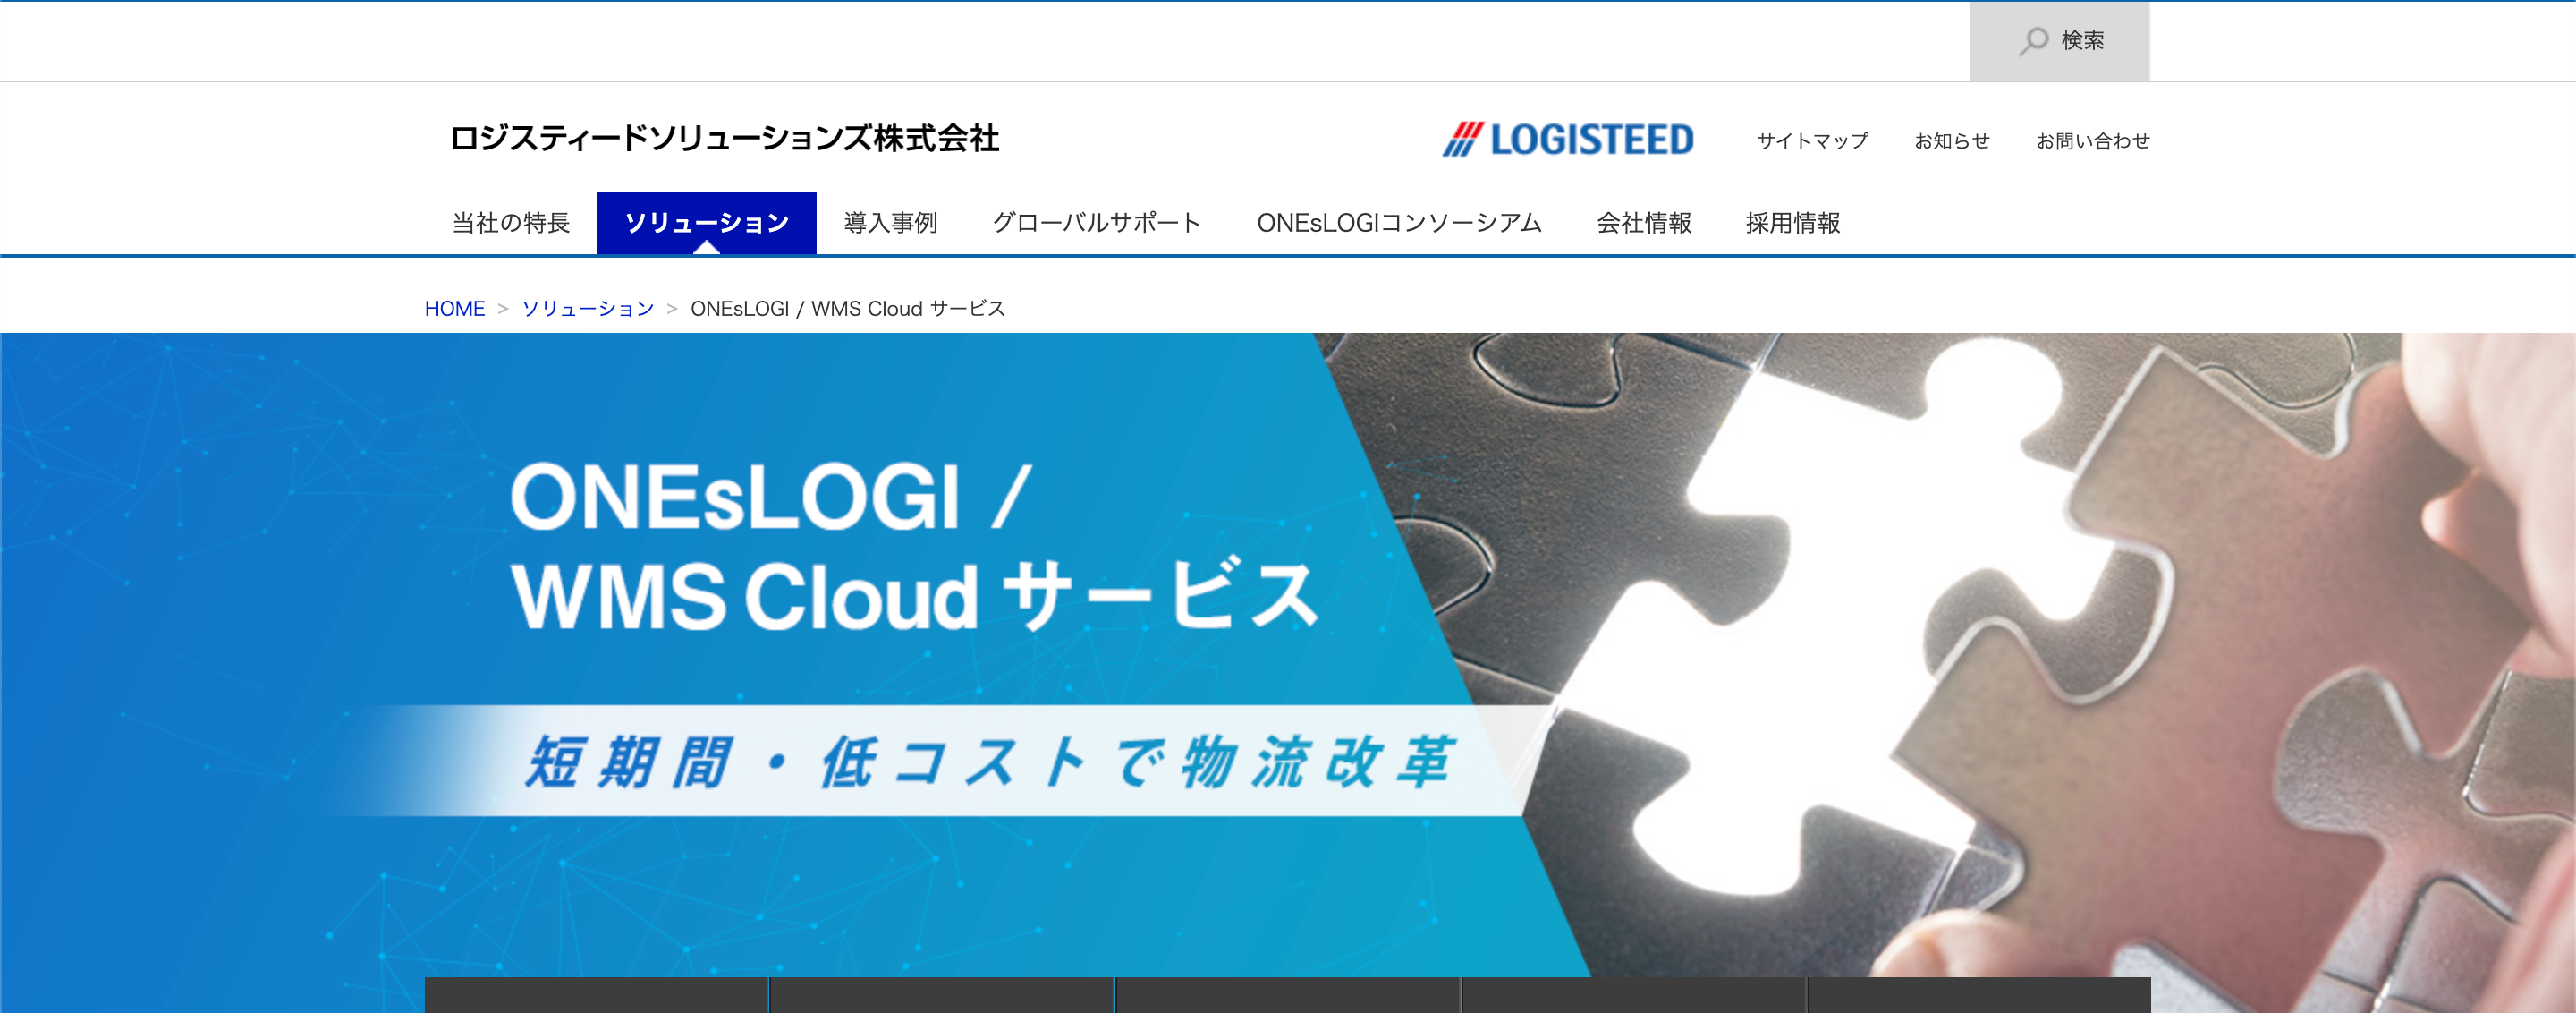 ONEsLOGI/WMS Cloudサービス